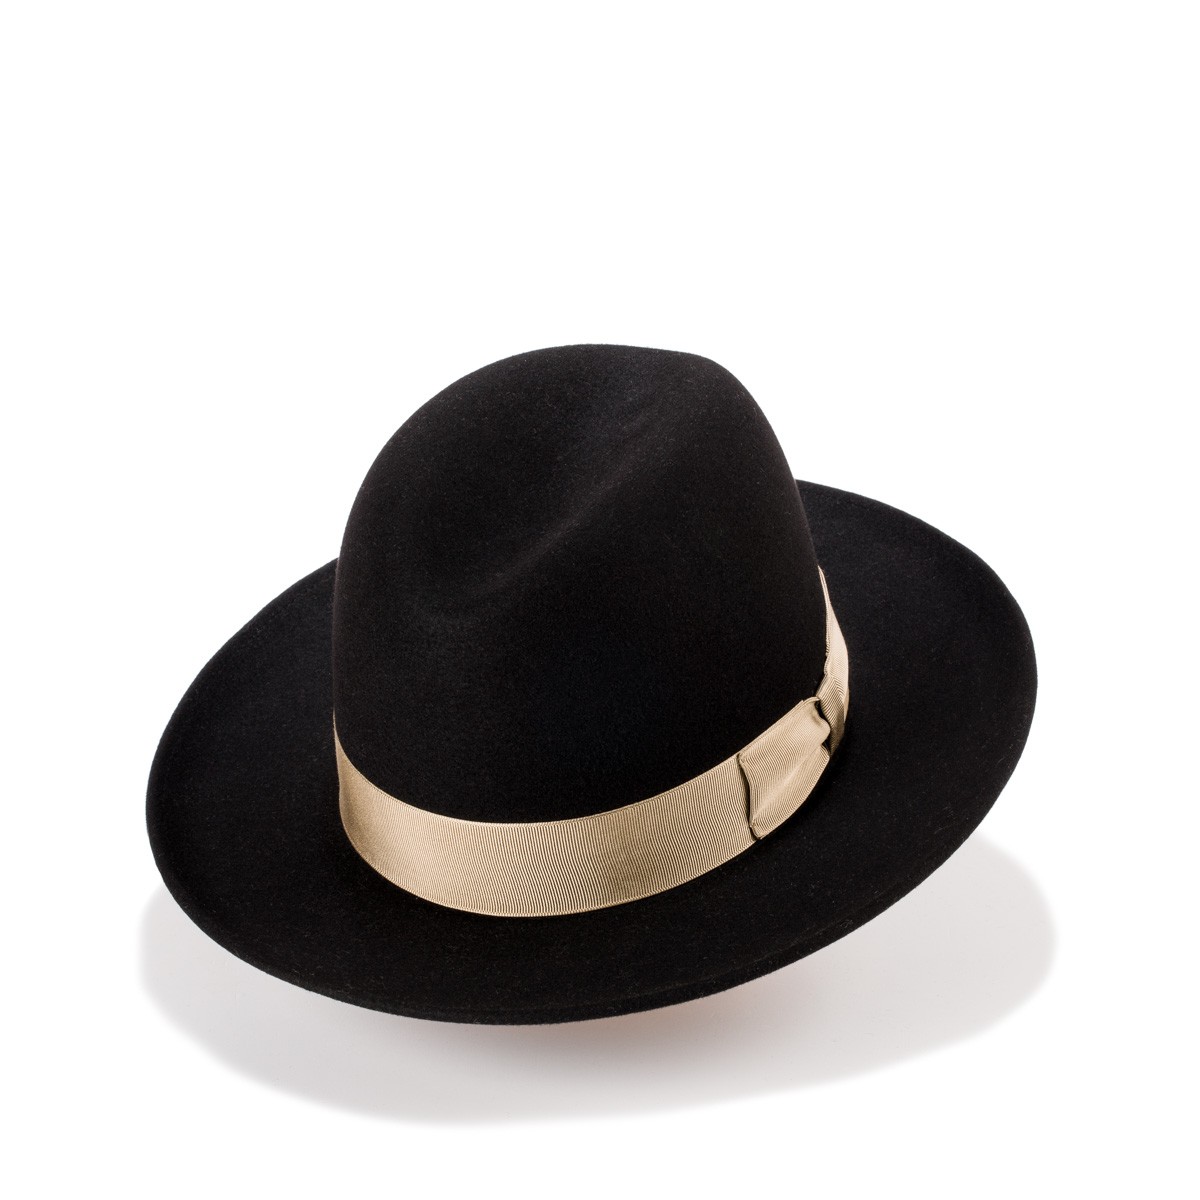 Rick sombrero fieltro de lana en color negro de estilo y copa